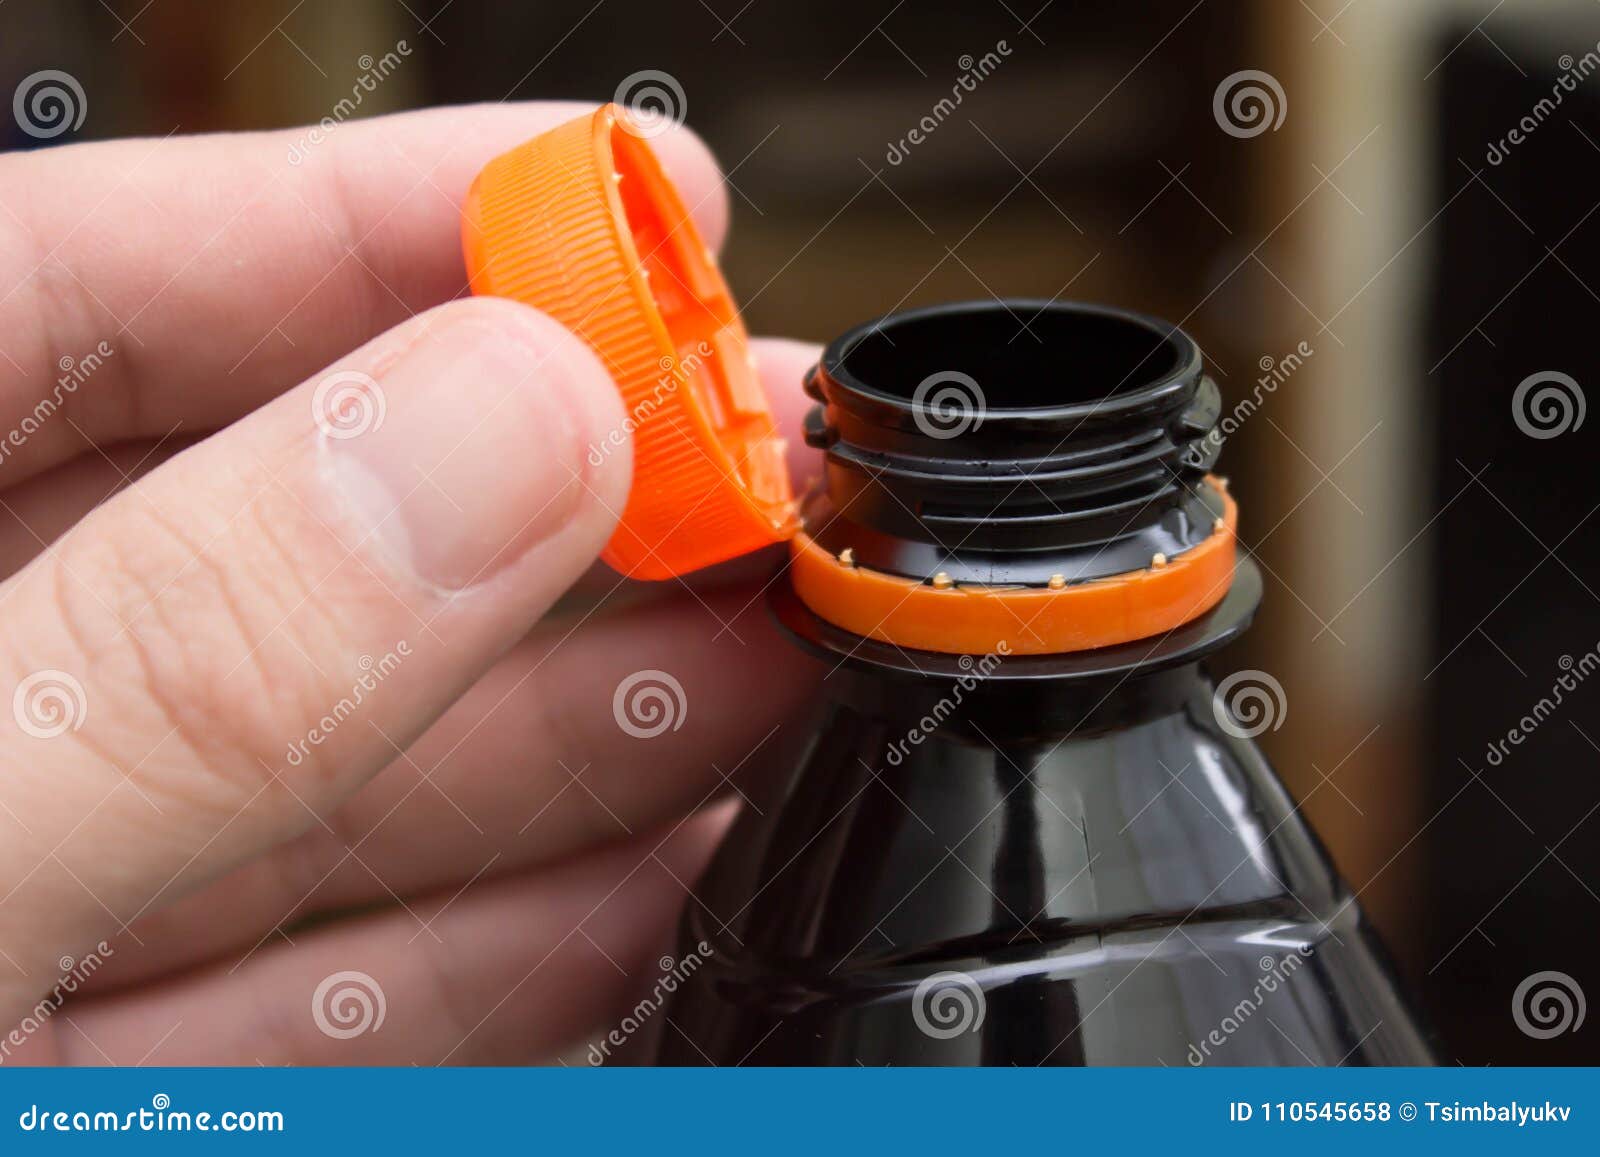 Плотно закрыт крышкой при. Откручивание крышки с бутылки. Пластиковая бутылка с открываемой крышкой. Пластмассовая бутылка с открывающейся колпачком. Крышка от баклажки.